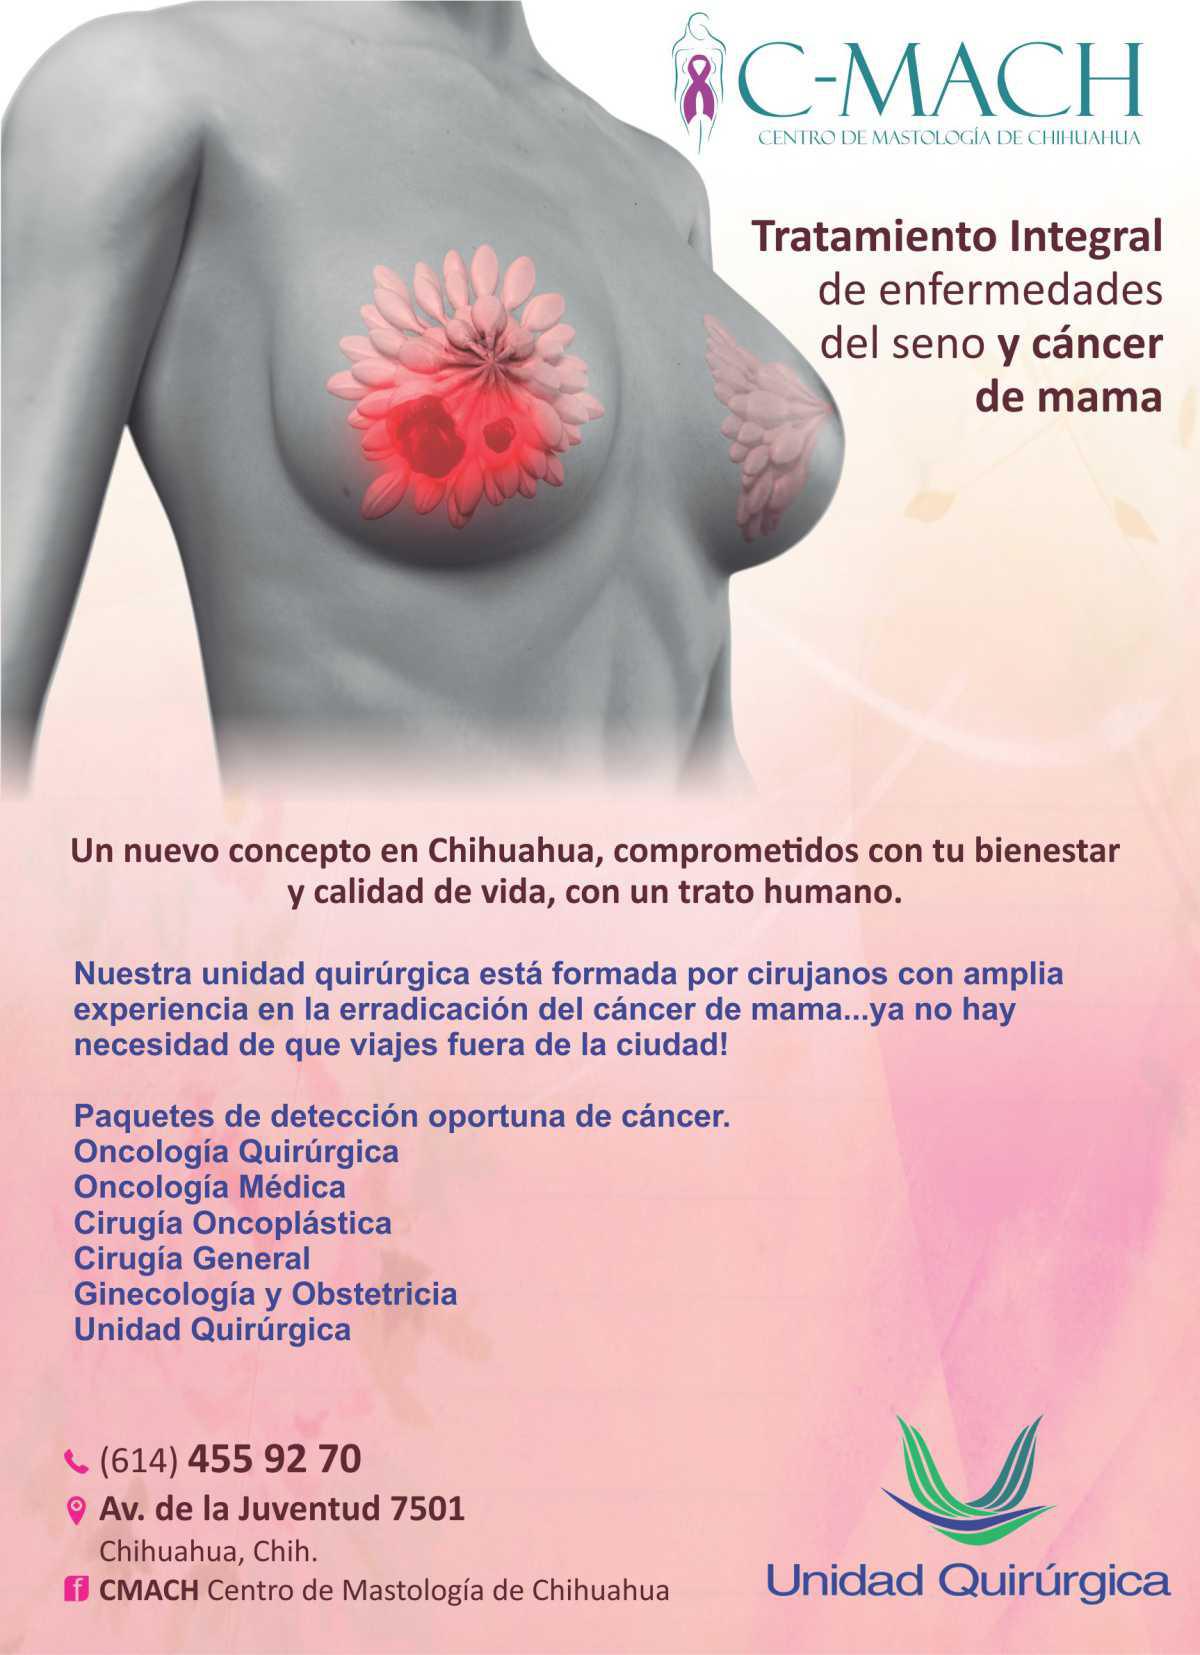 C-MACH Centro de Mastología de Chihuahua